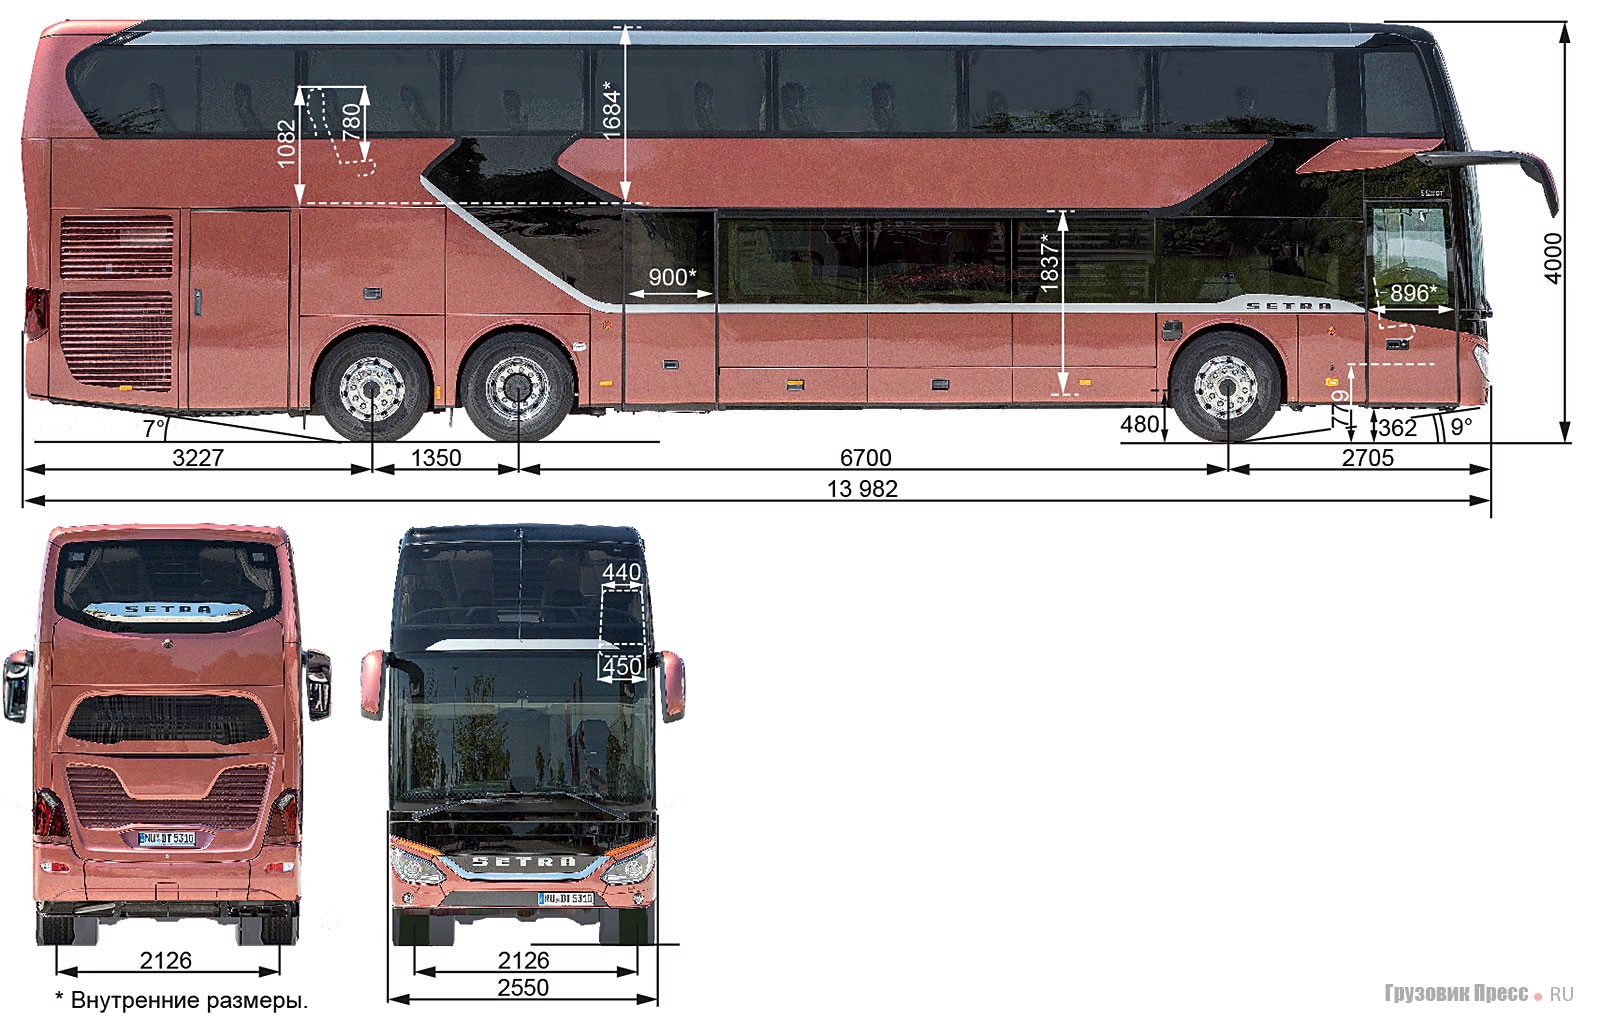 Автобус длиной 15 метров. Автобус Setra s328dt. Автобус Setra габариты. Автобус сетра габариты. Setra s328dt чертеж.